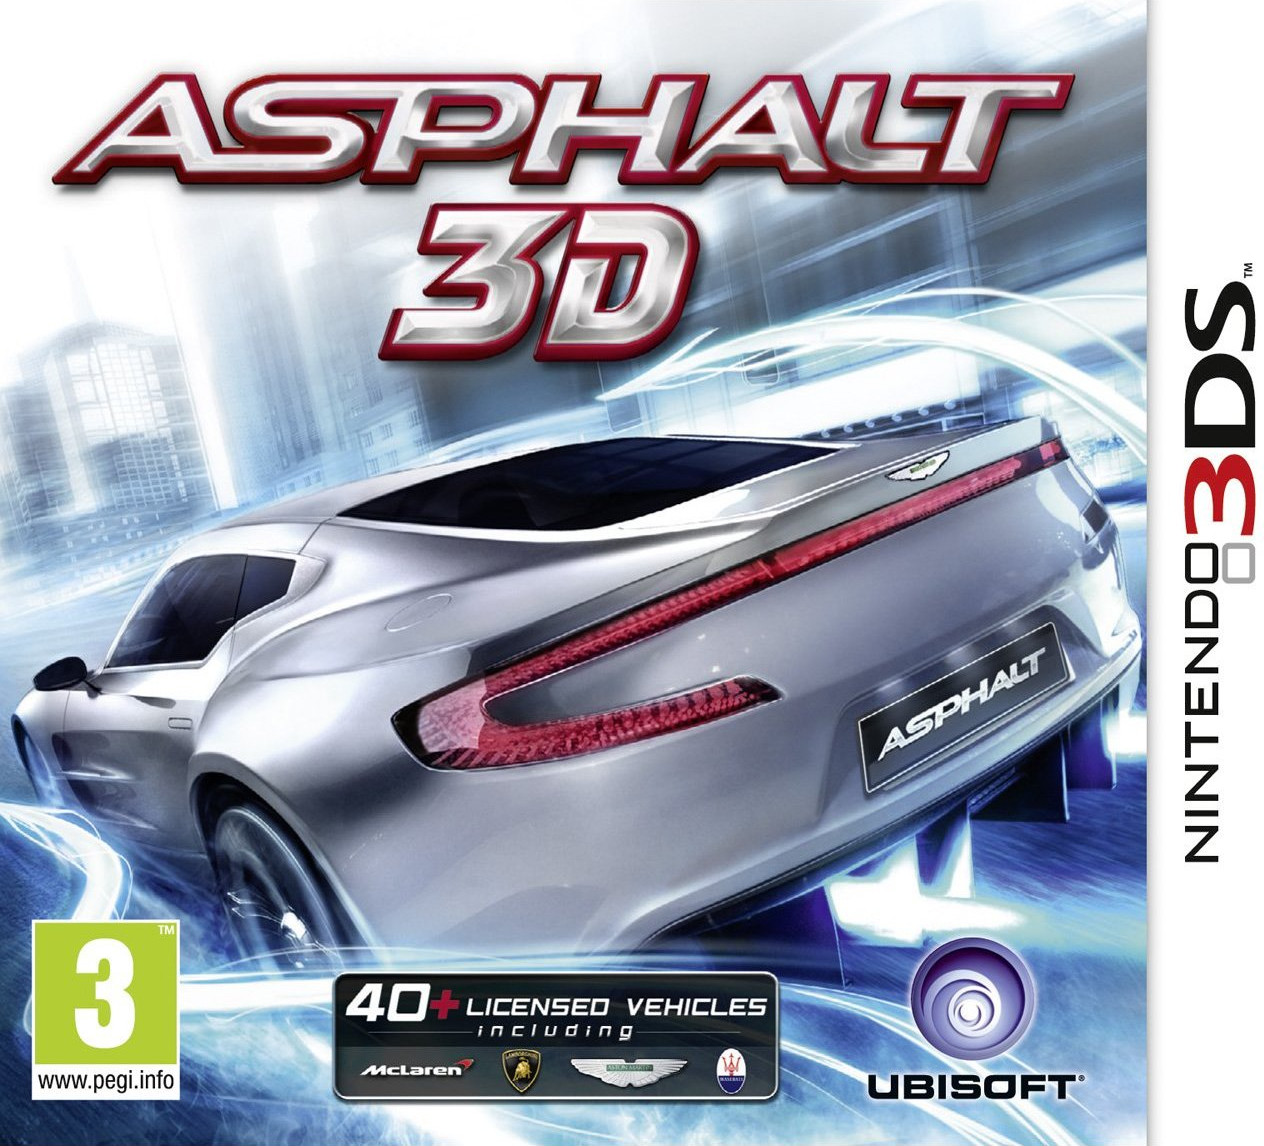 Asphalt 3D (3DS)